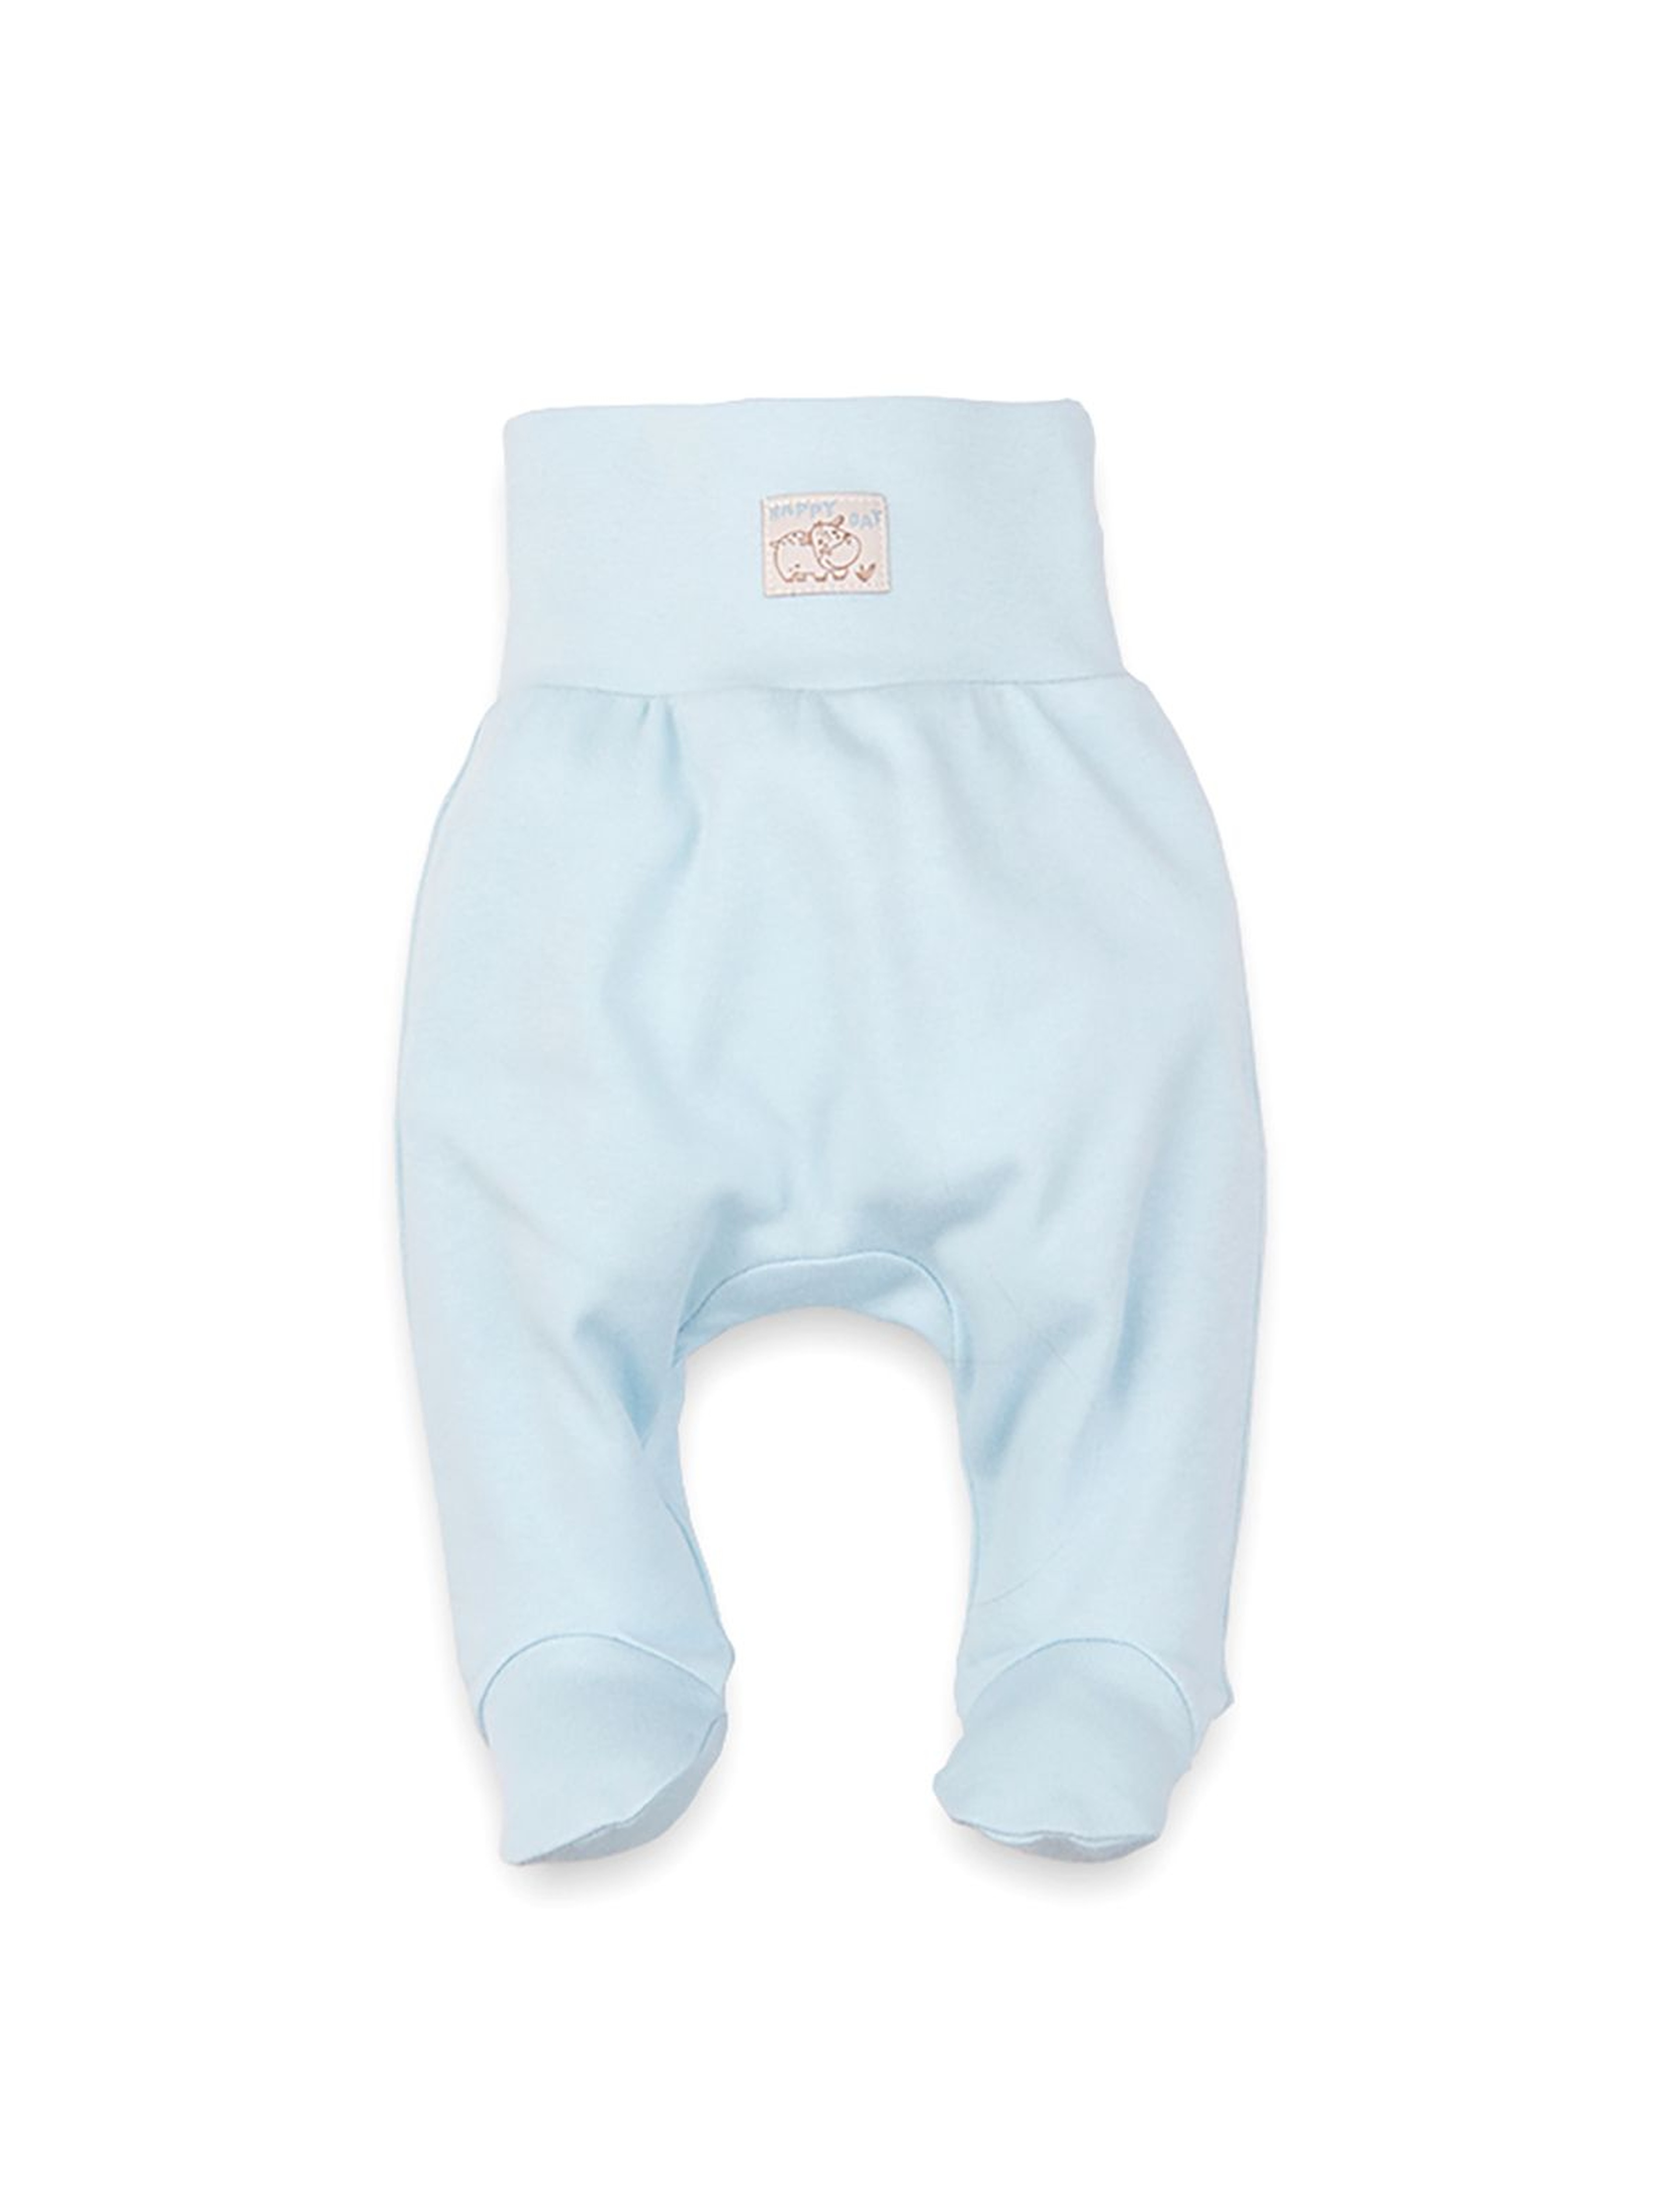 Błękitne półśpiochy niemowlęce z bawełny organicznej dla chłopca